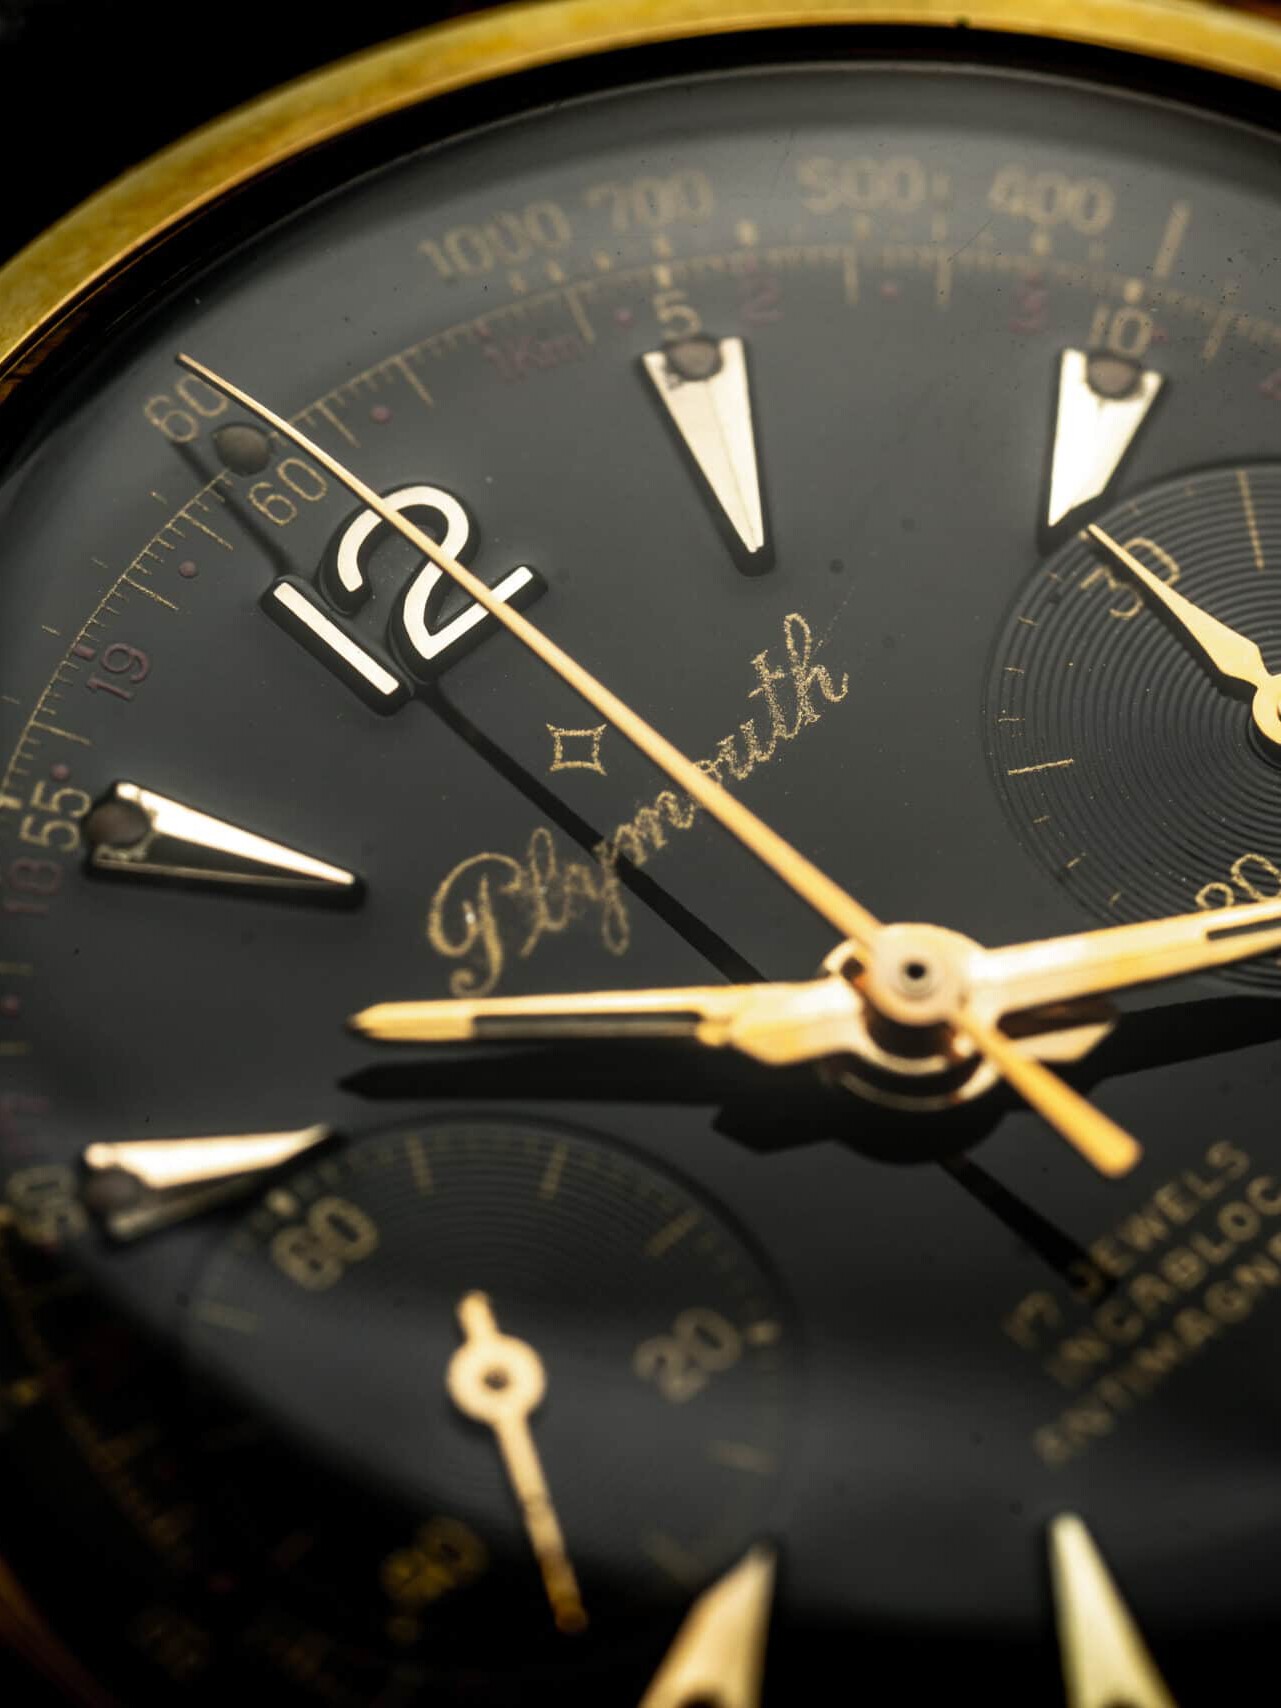 Plymouth chronograaf zwarte wijzerplaat gold cap